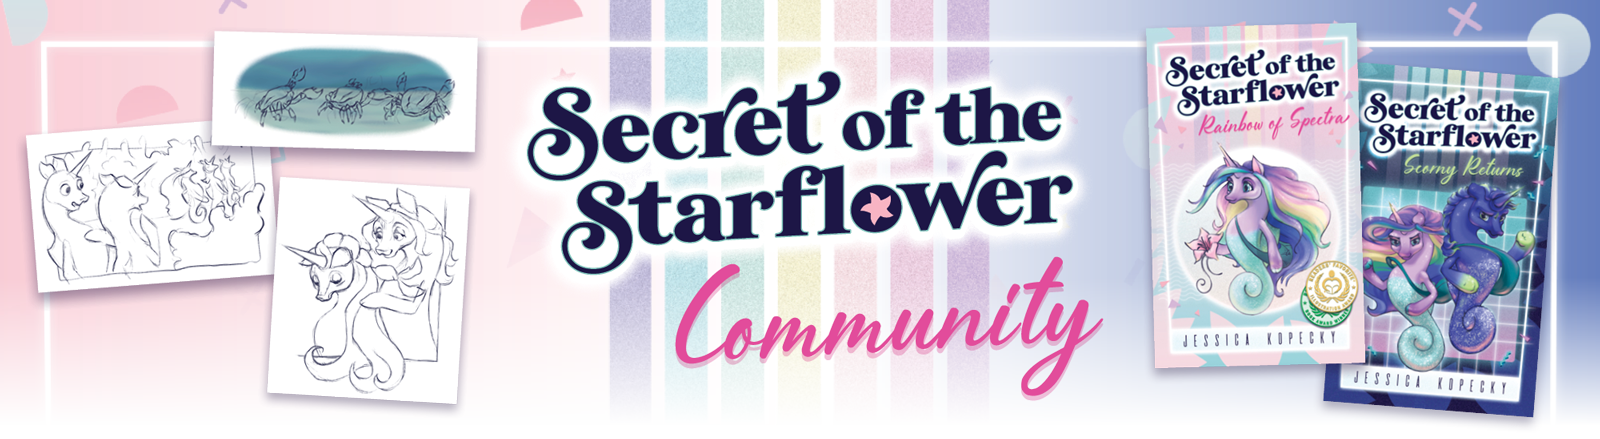 Secret of the Starflower Community